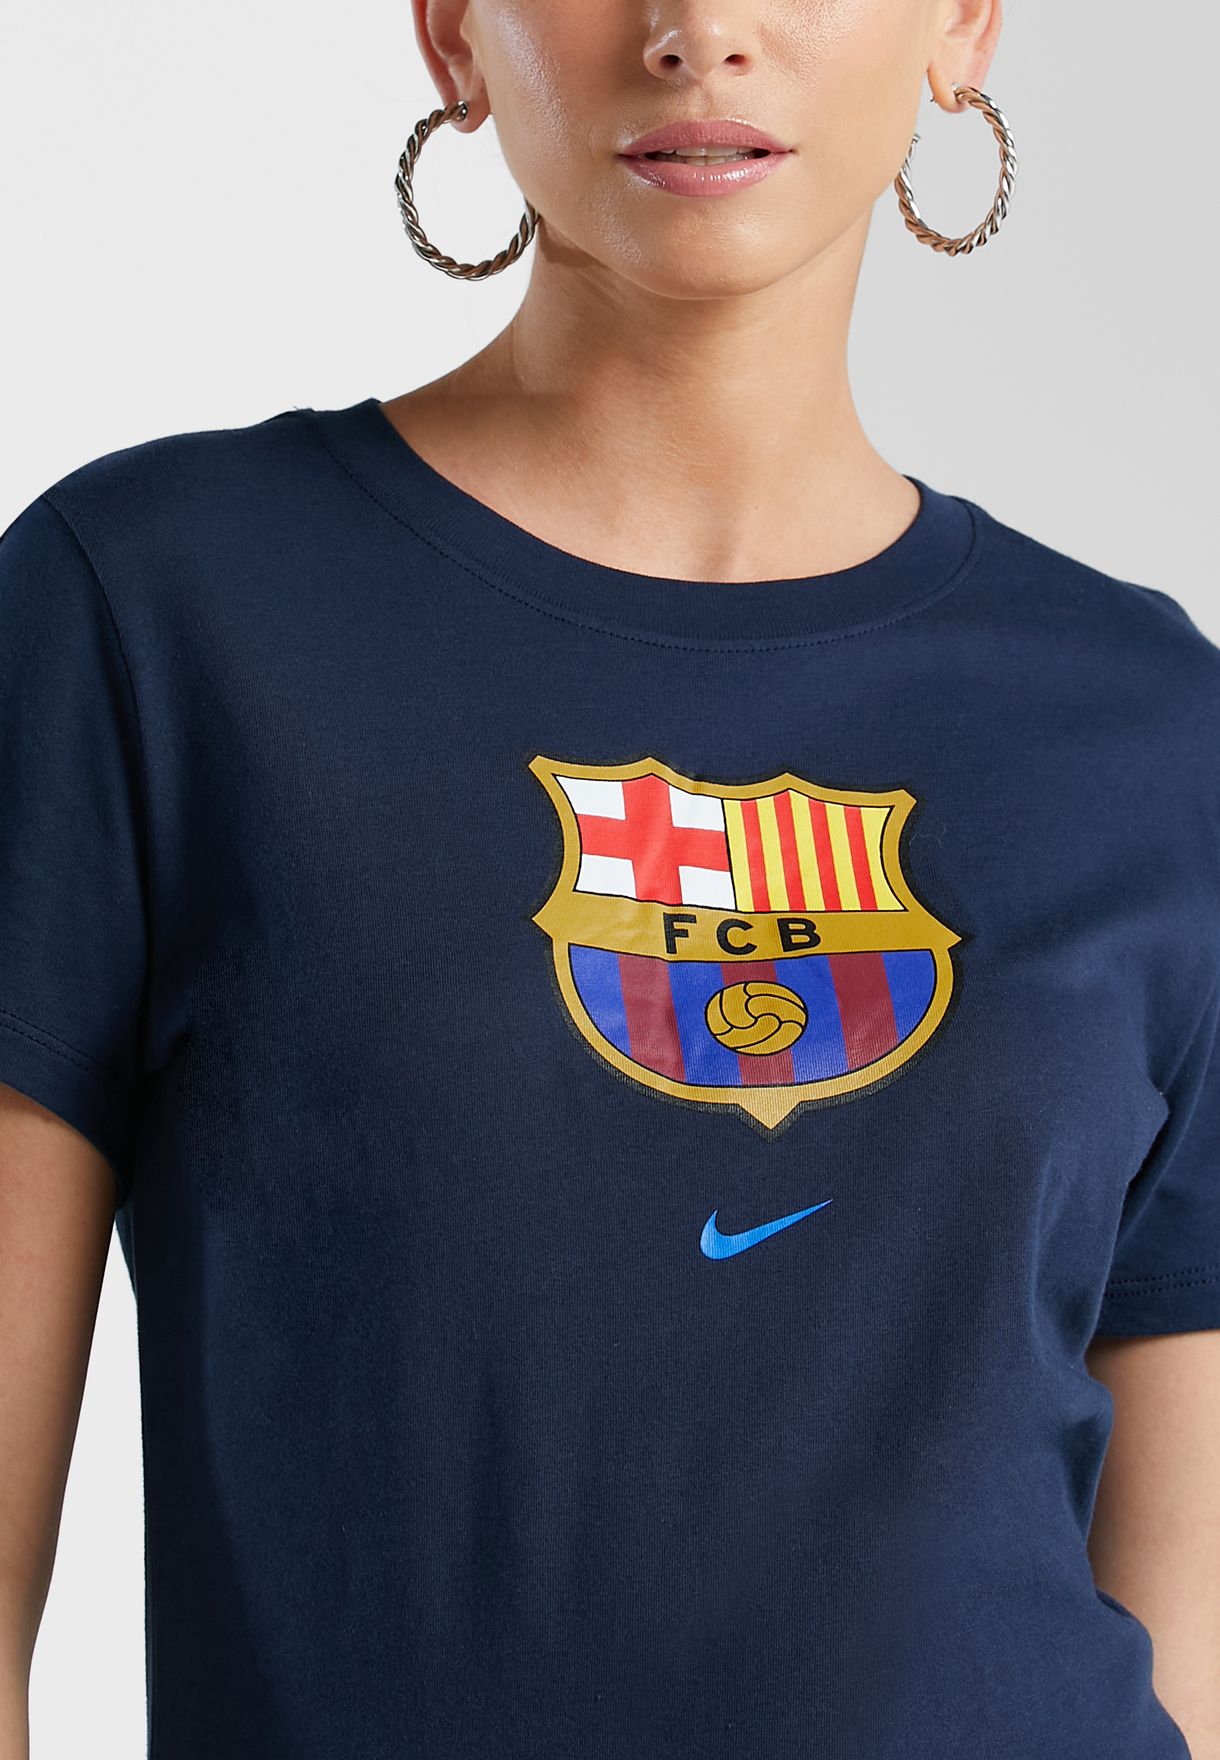 Fc Barcelona Evergreen Crest T-Shirt